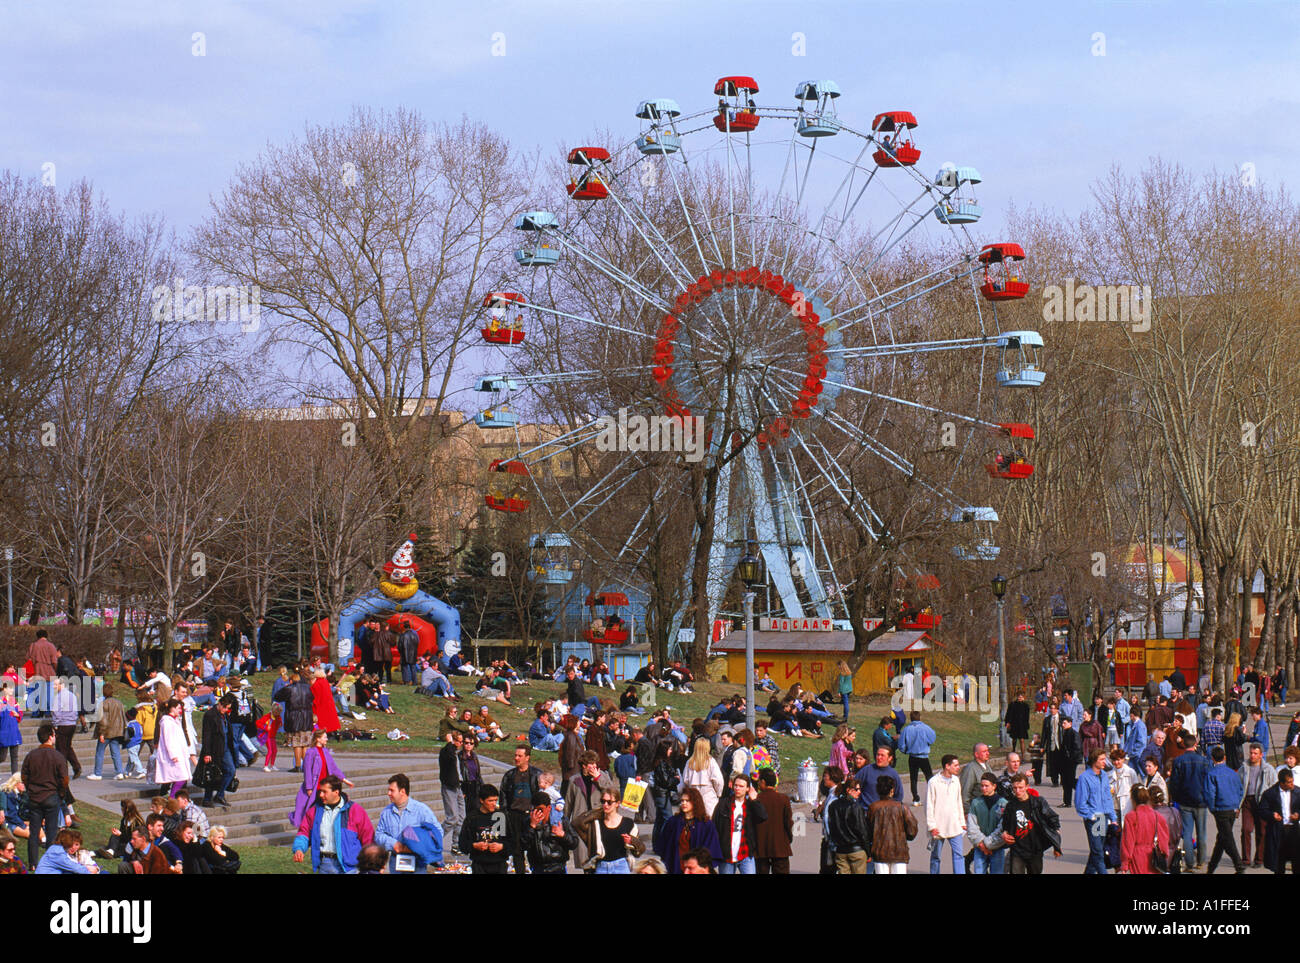 La foule à une fête foraine avec une grande roue au cours de la Journée de la Terre Festival dans le Parc Gorky à Moscou Russie G Hellier Banque D'Images